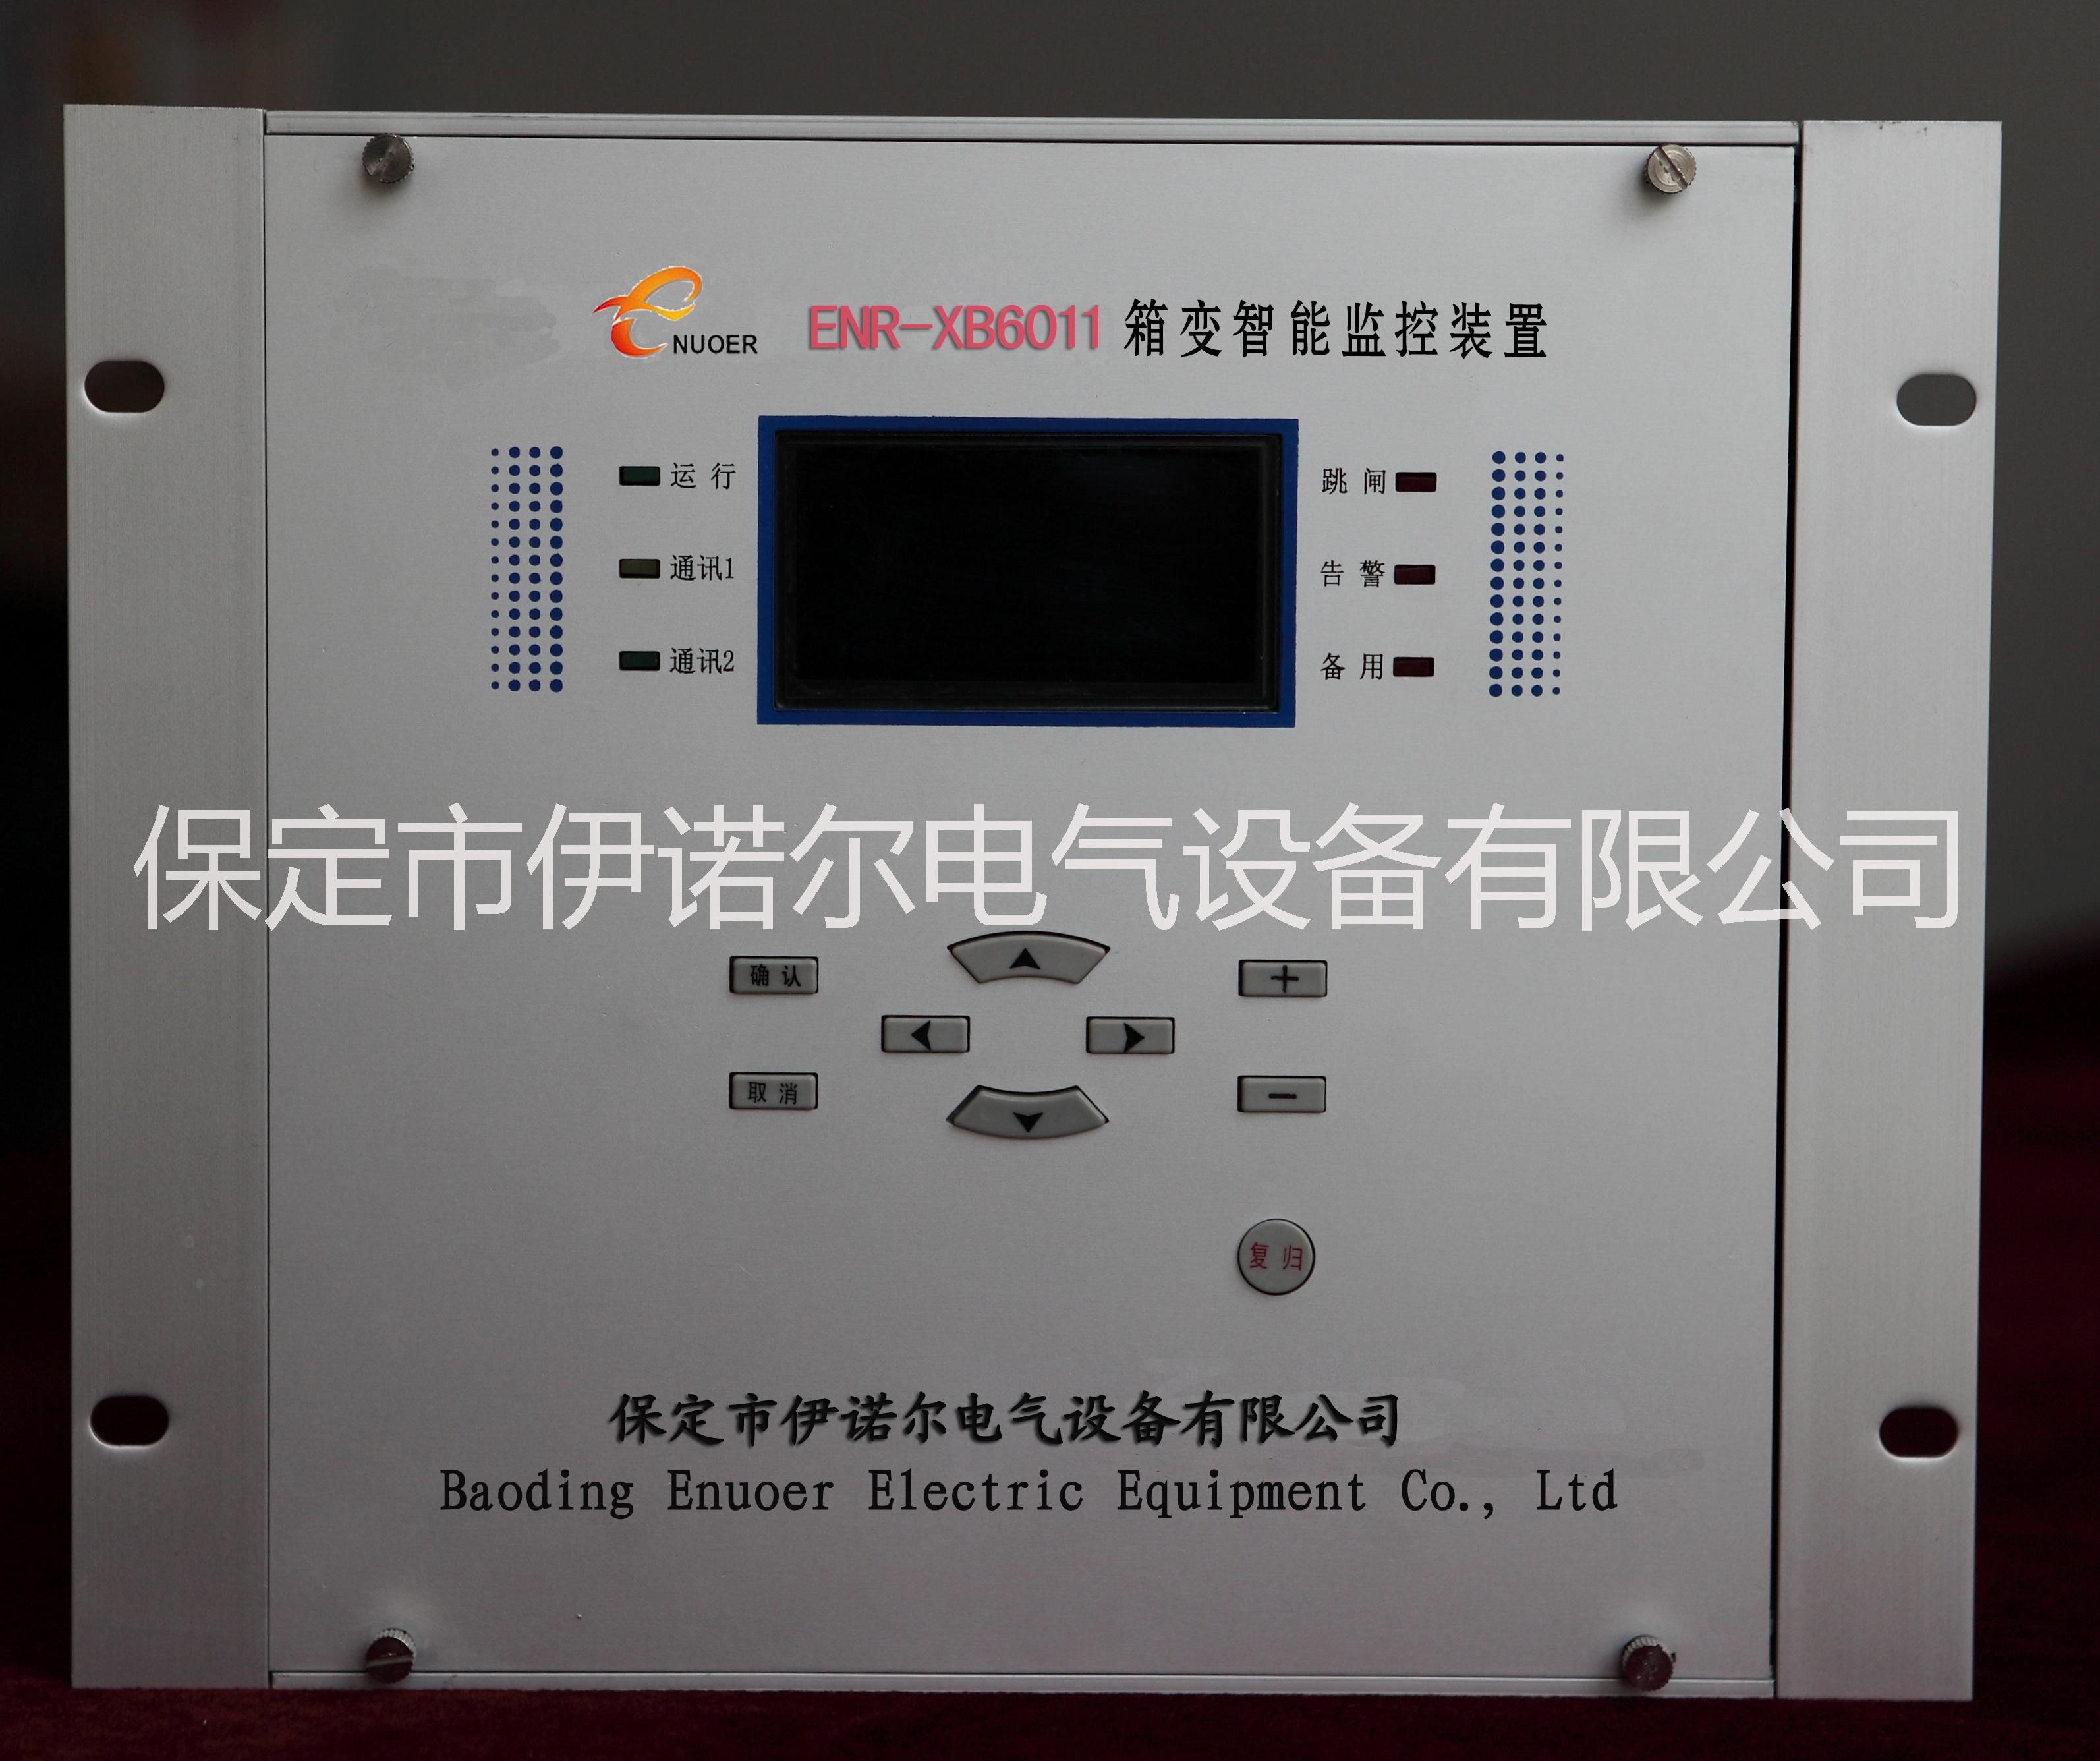 供应ENR-XH6011箱变智能测控/综保装置保定伊诺尔专业生产图片